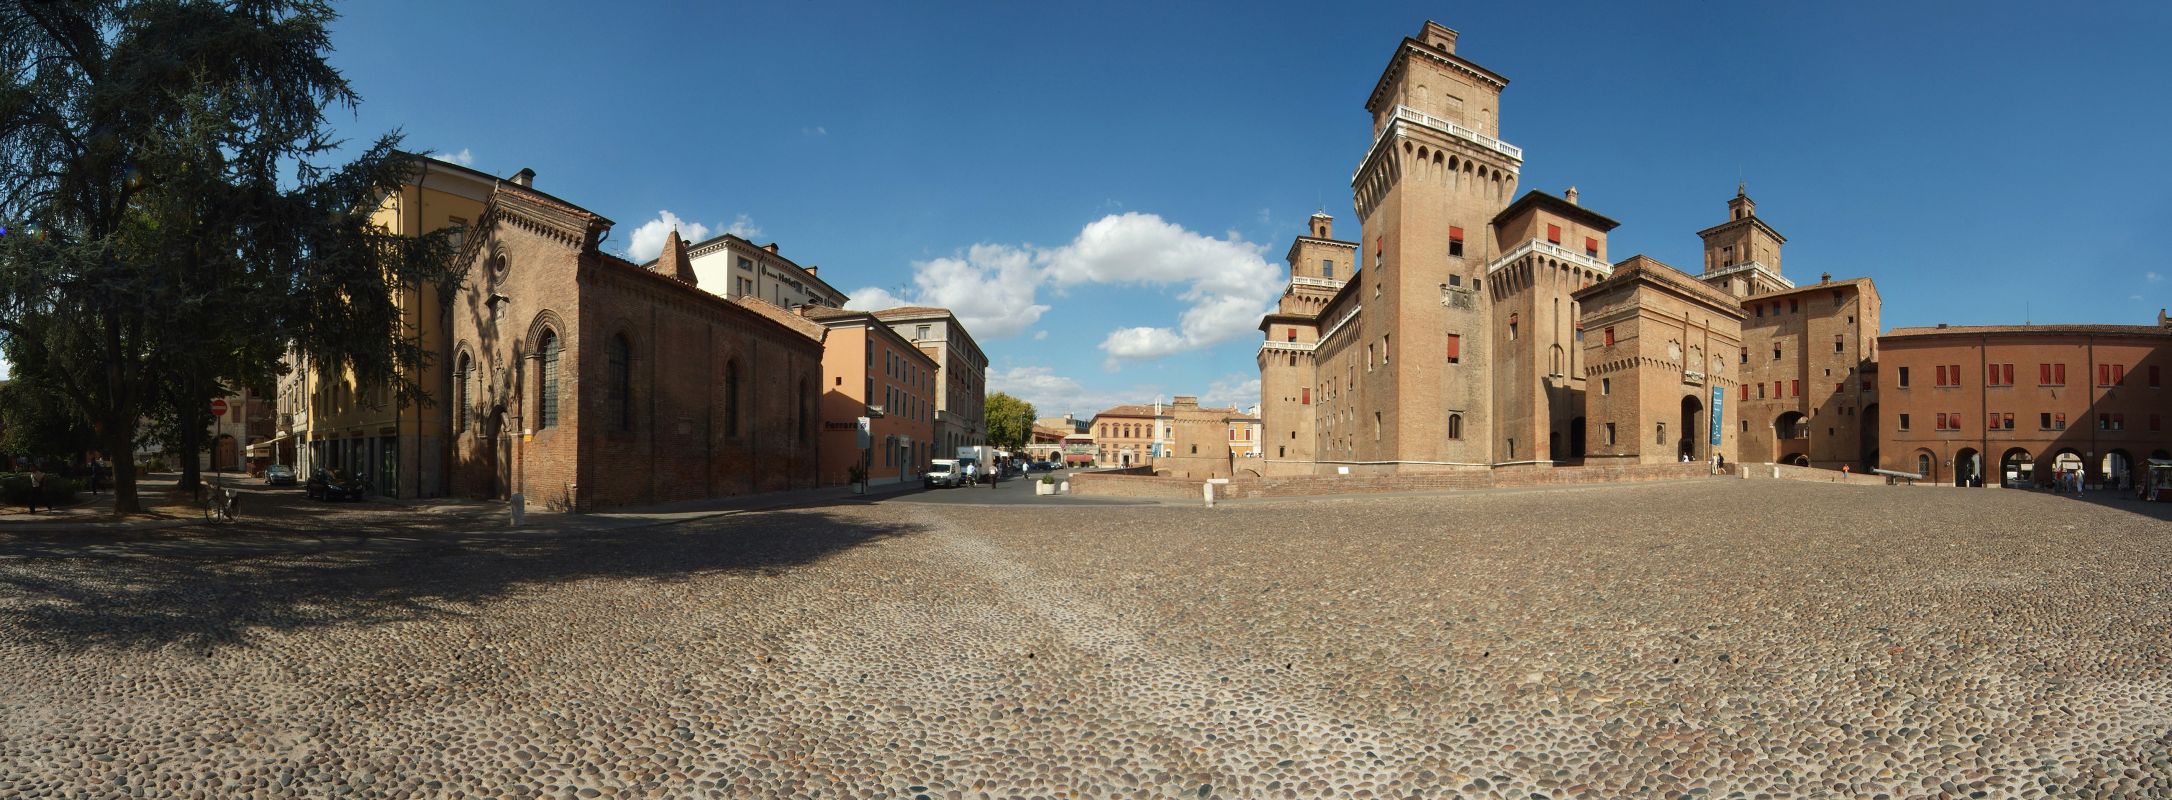 Piazza Castello, Chiesa di San Giuliano, Castello Estense - Massimo Baraldi